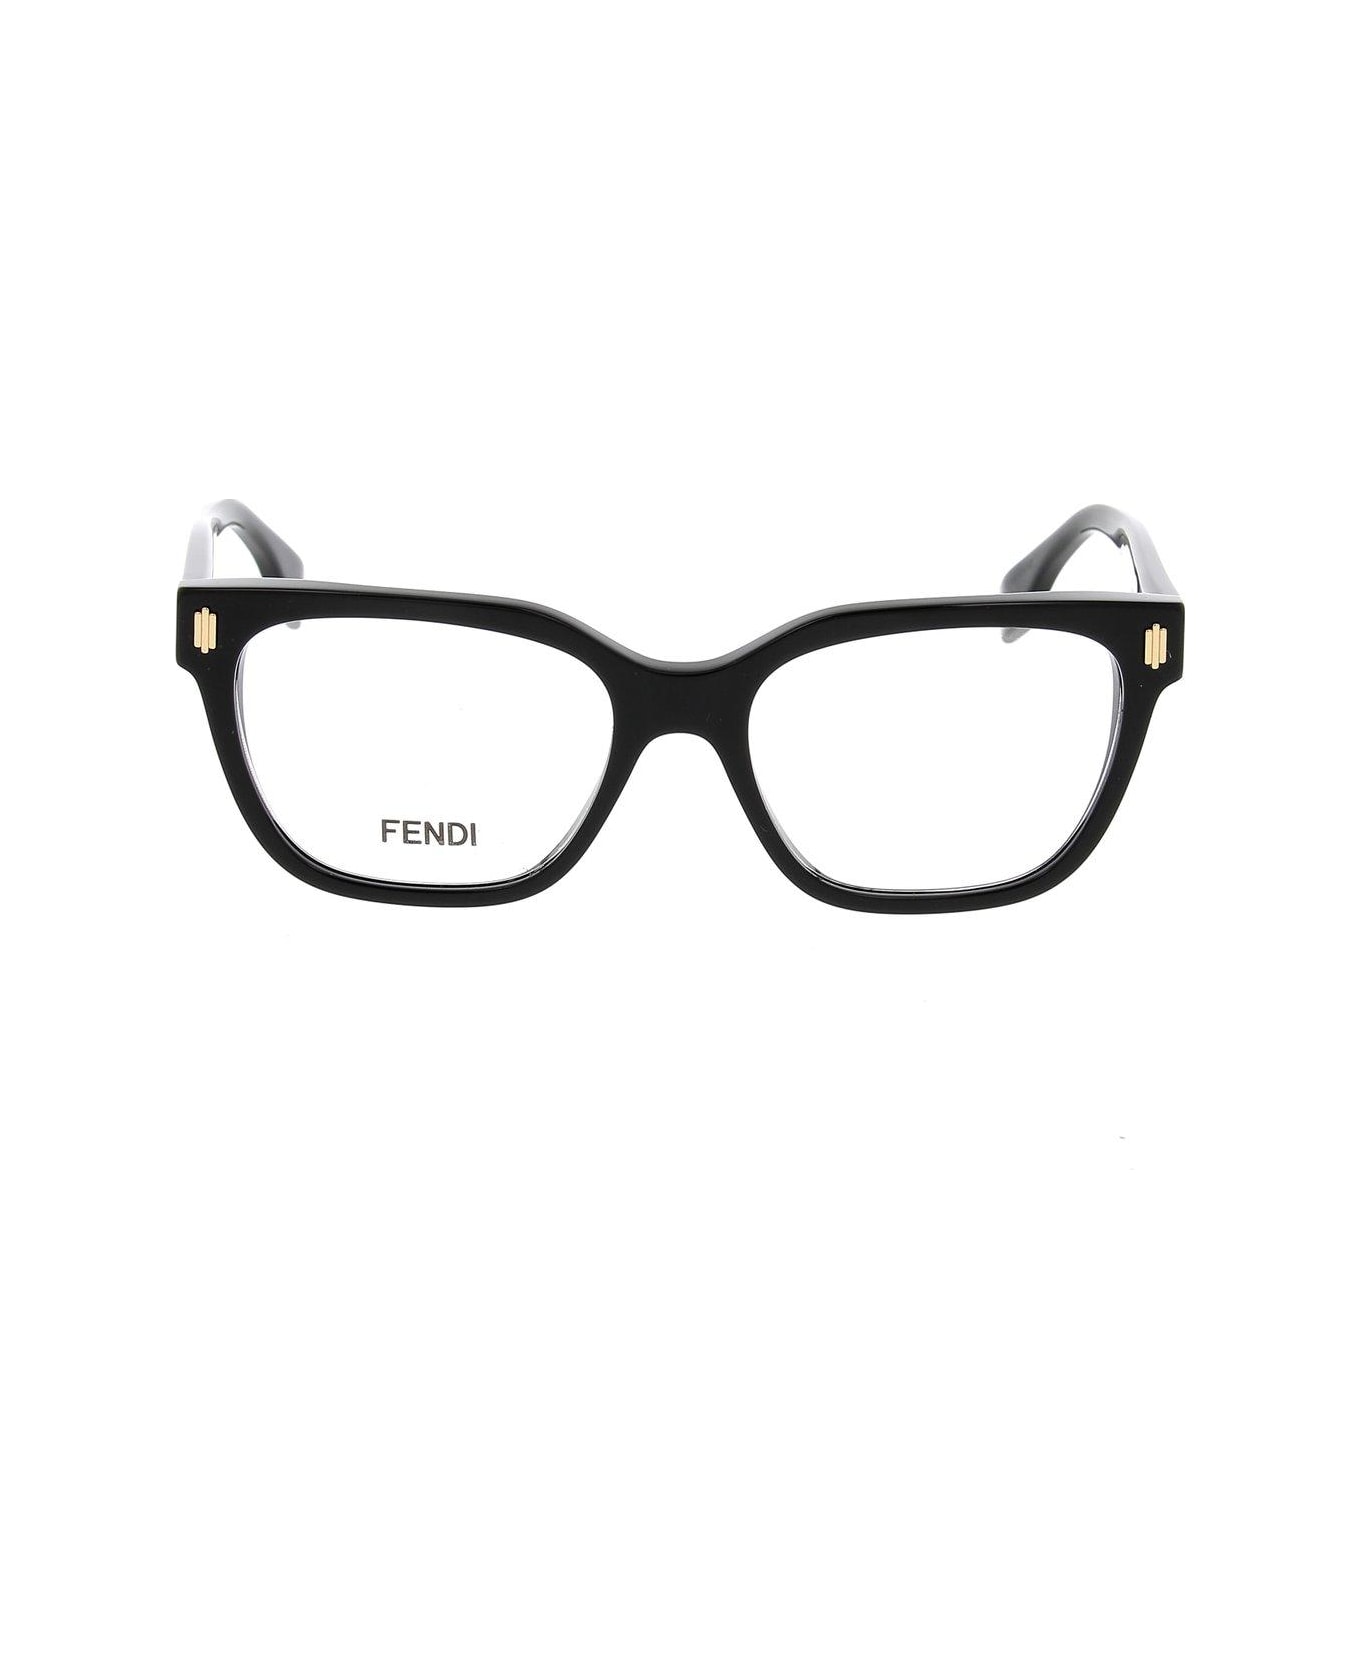 Fendi Eyewear Rectangle Frame Glasses - 001 アイウェア